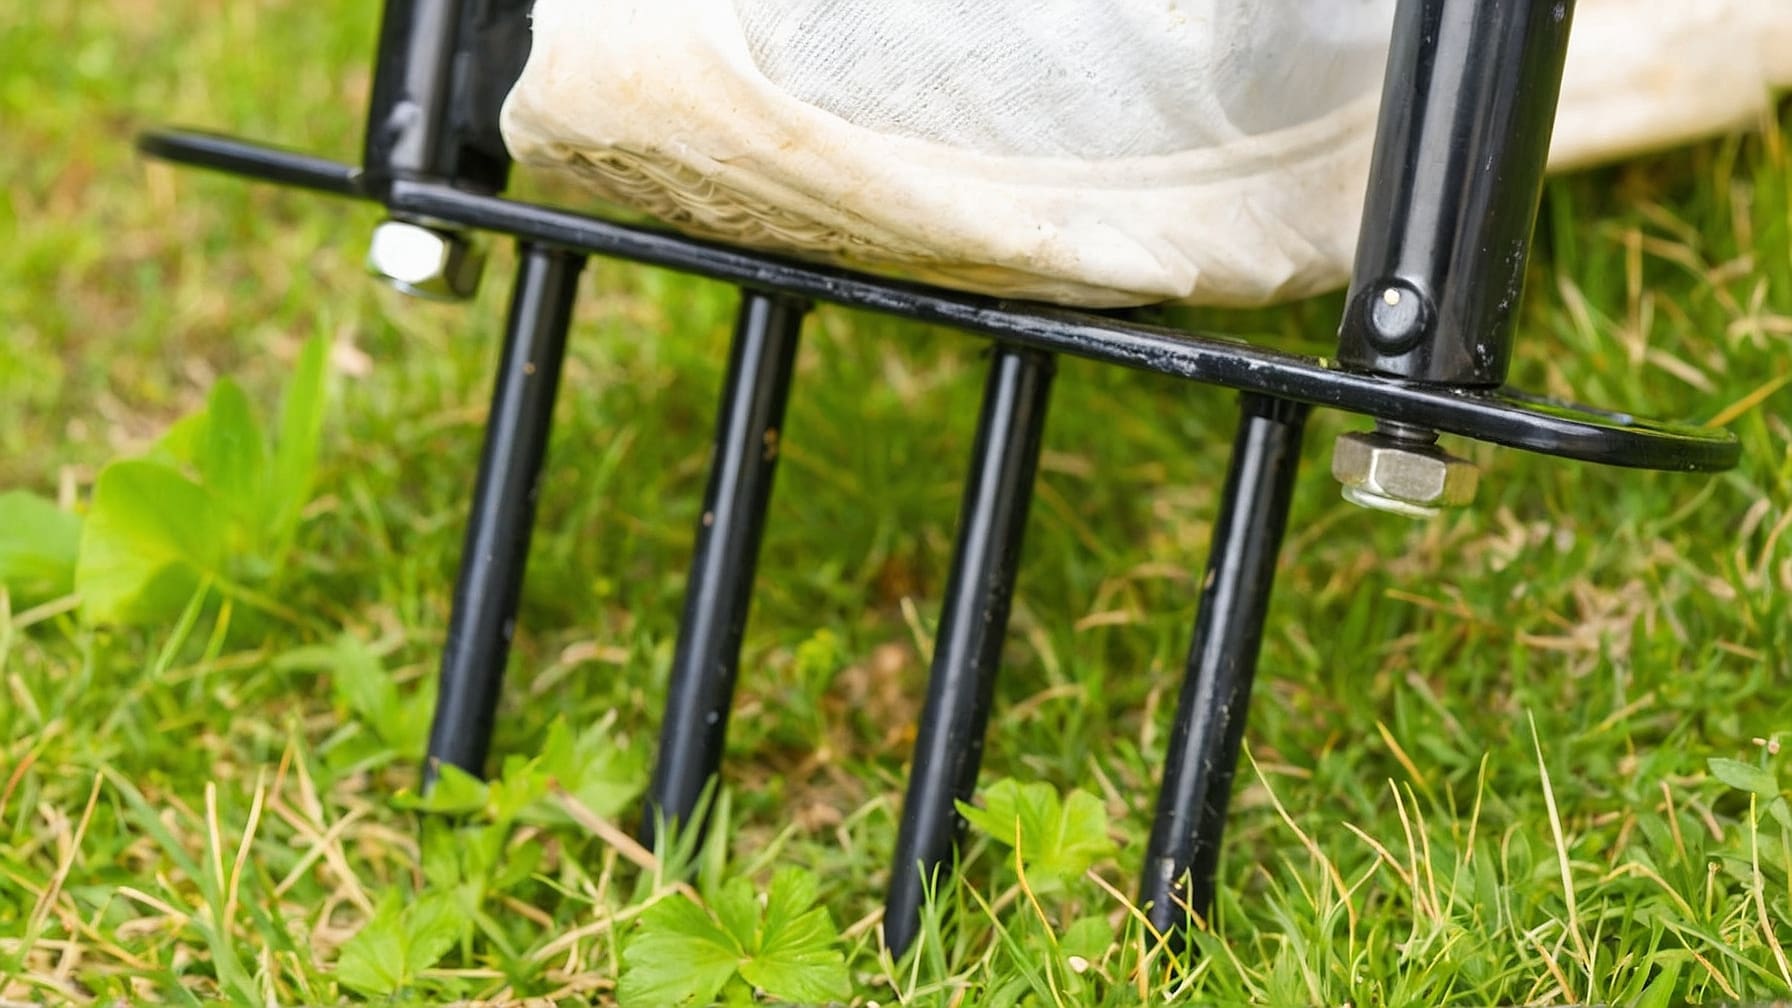 Arieggiatura prato manutenzione: scopri come e perché è cruciale per la salute del tuo giardino. Tecniche, tempi ideali e benefici